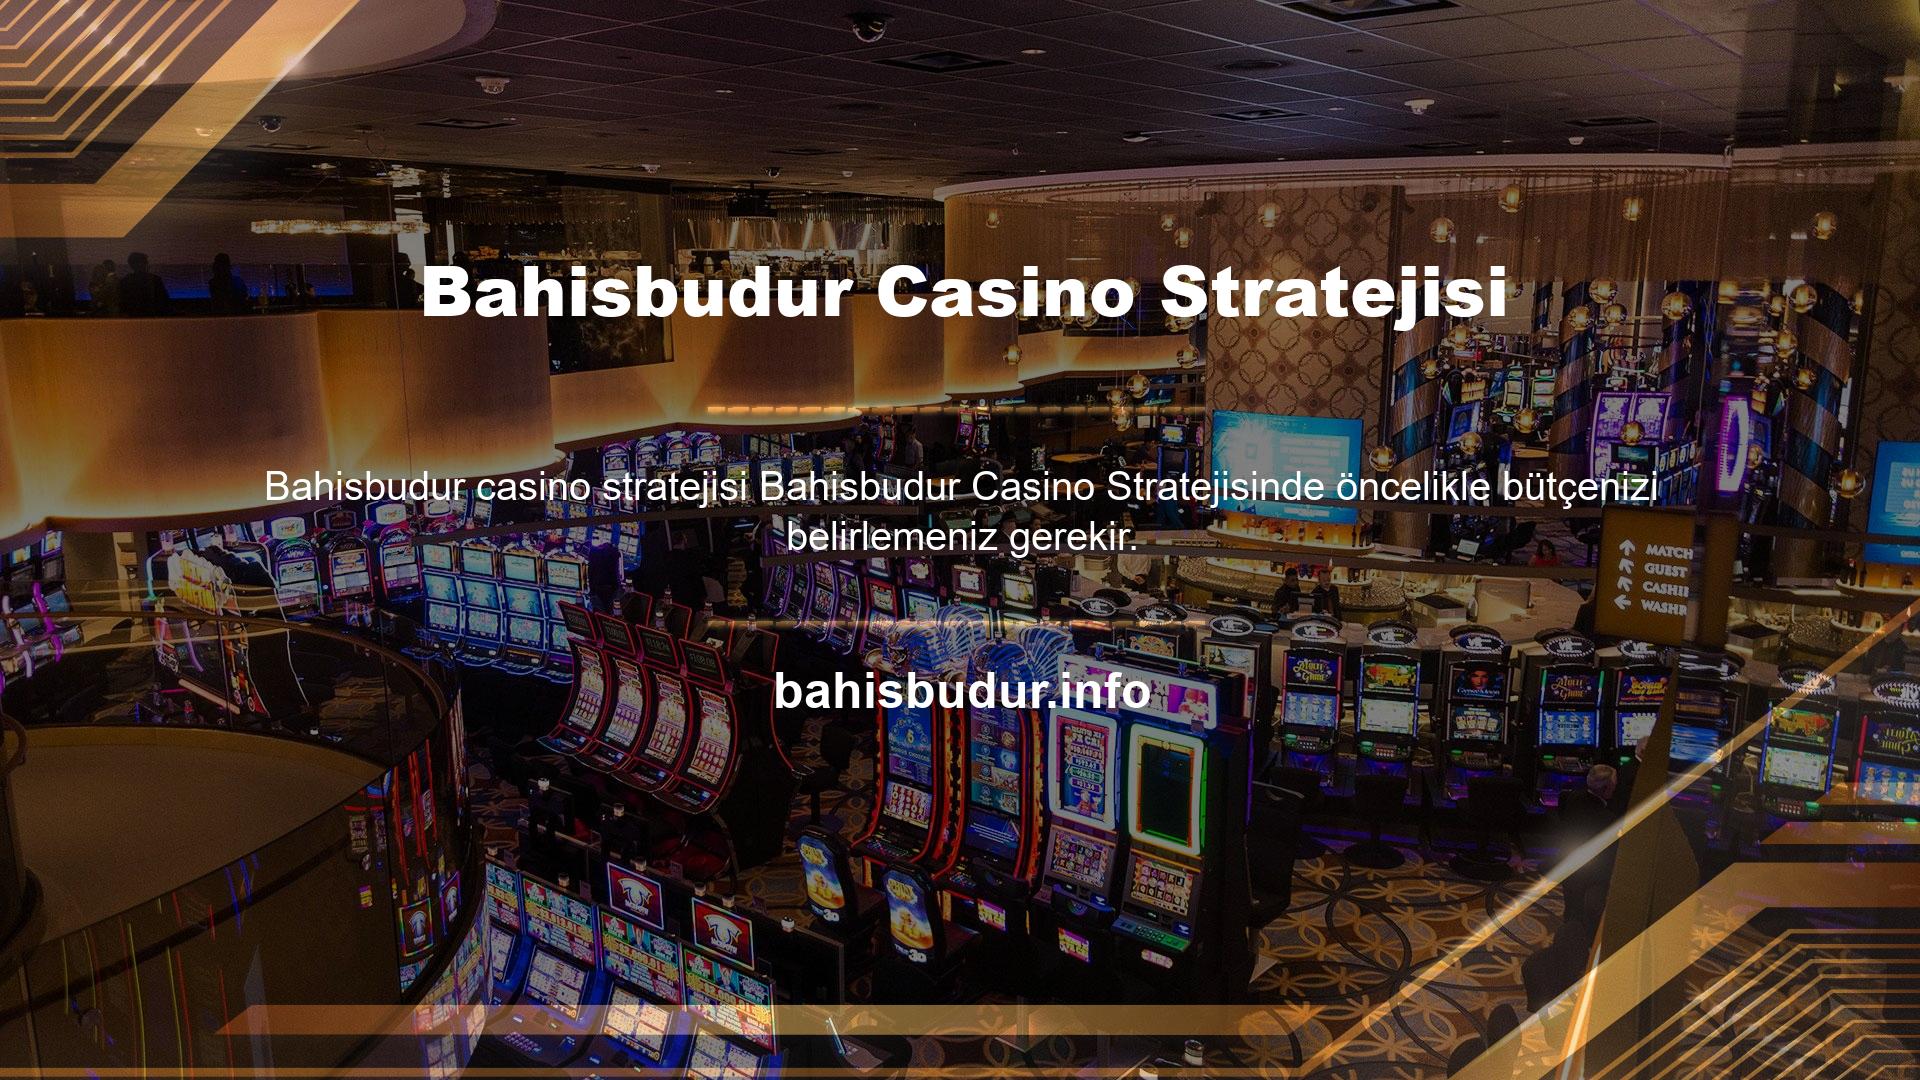 Bahisbudur Casino Stratejisi